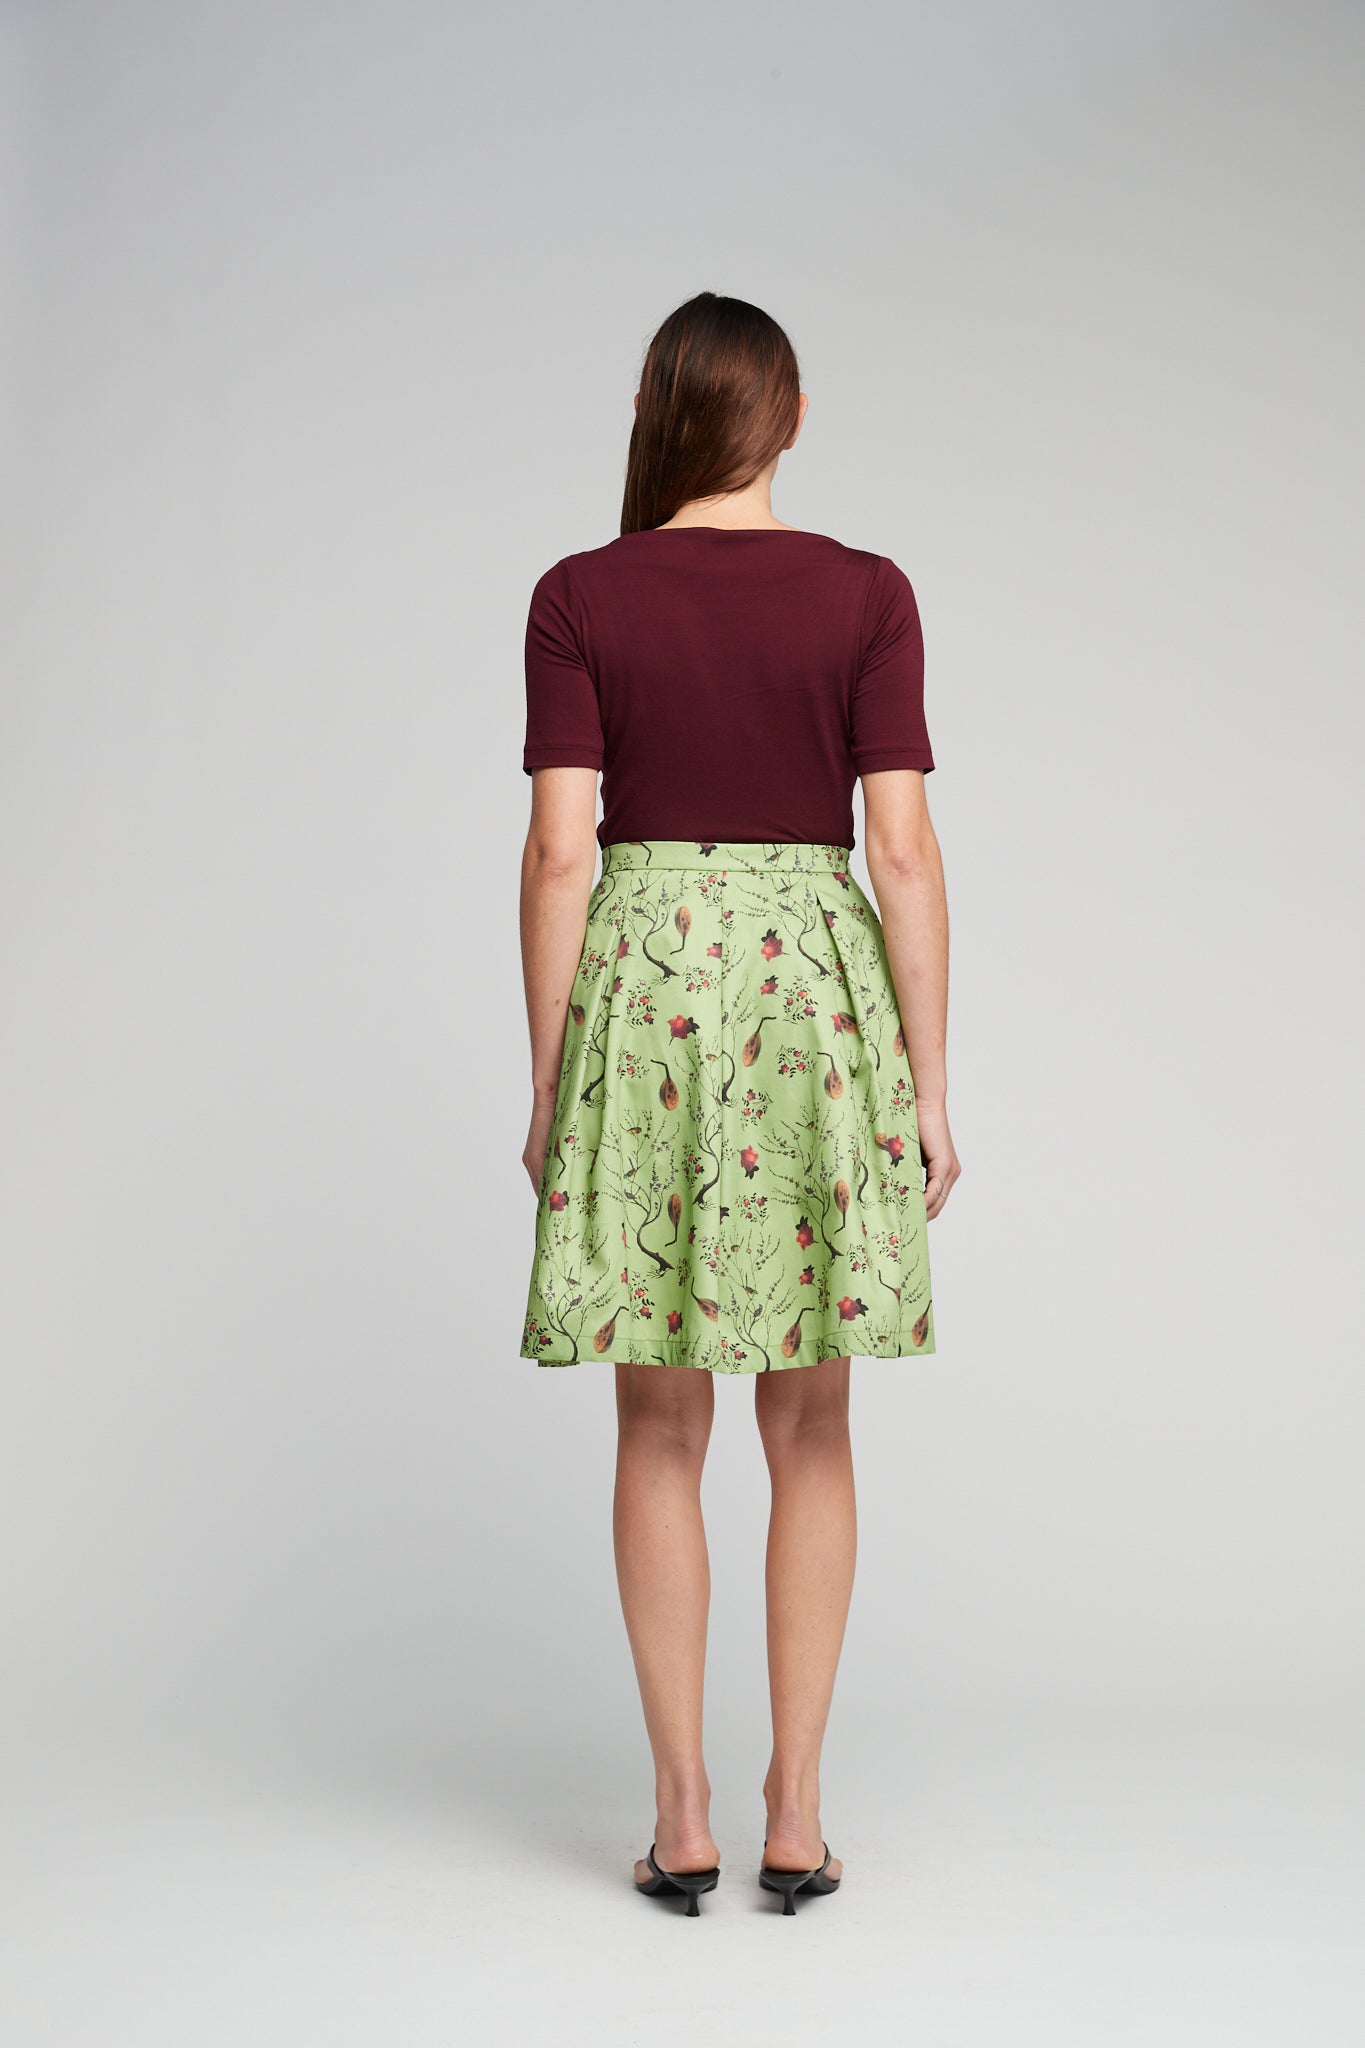 Spring skirt